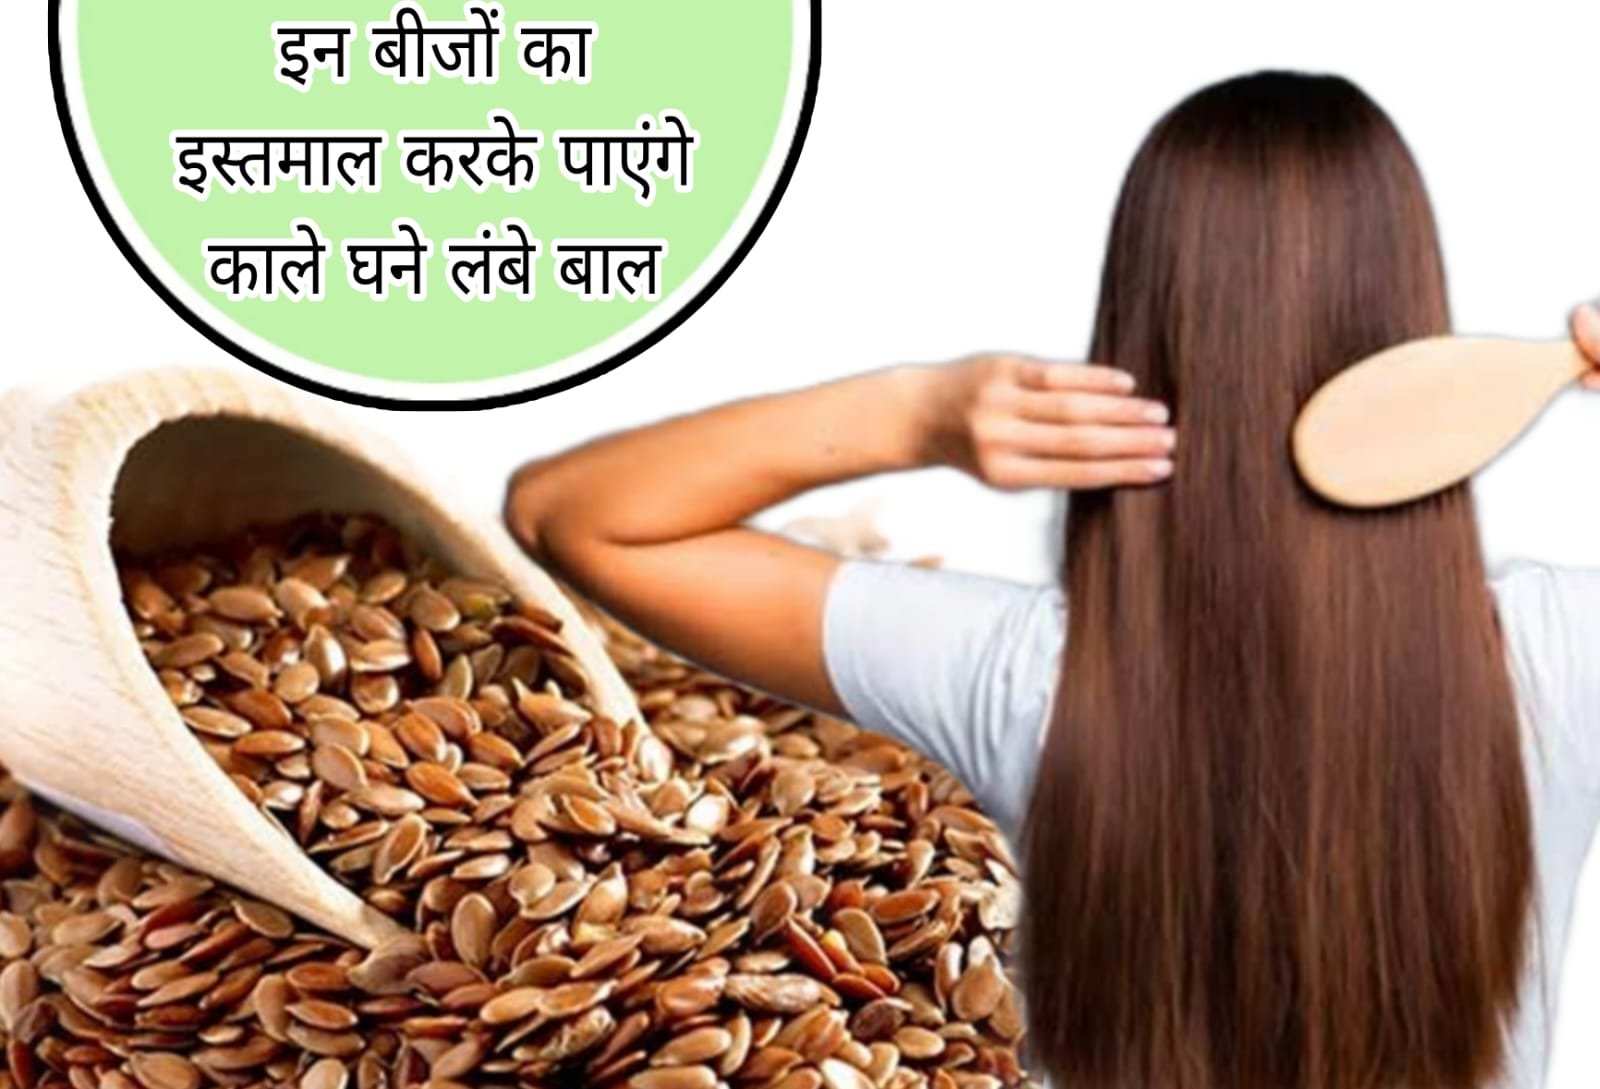 अलसी के फायदे - alsi ke fayde - Flax Seed Benefits In Hindi - alsi ke fayde  bataiye - YouTube